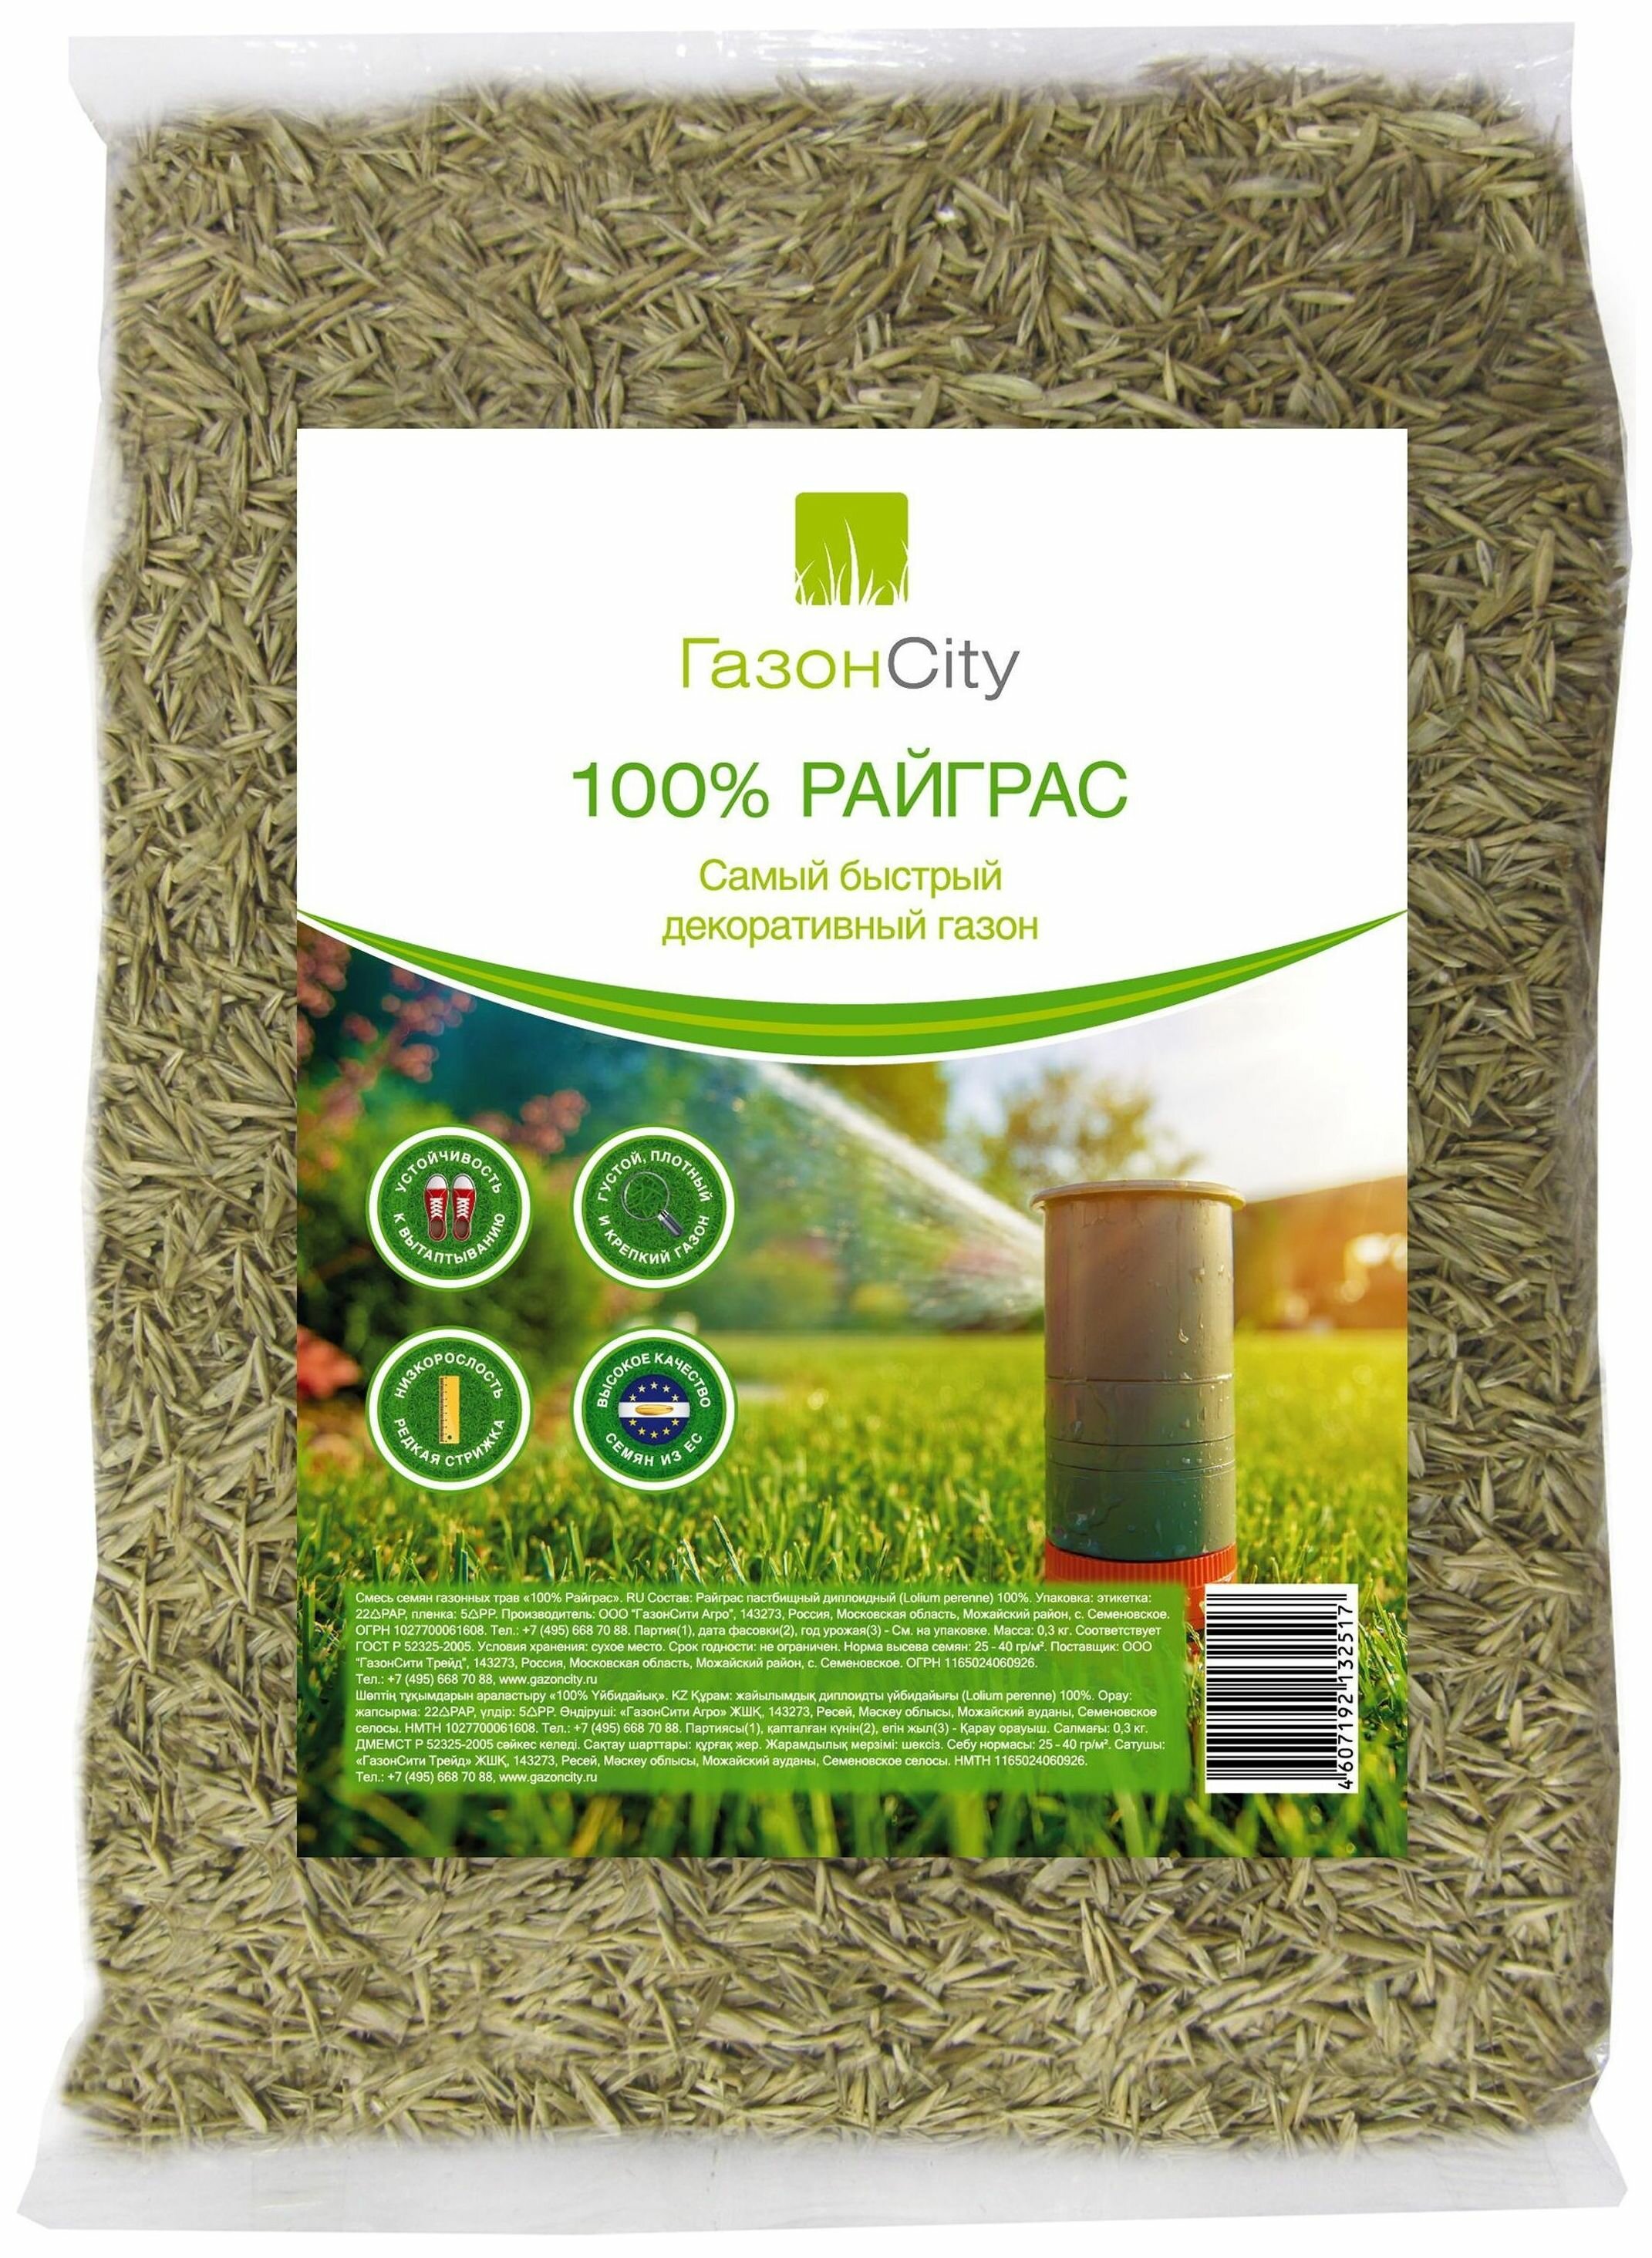 Семена ГазонCity Райграс 100% декоративный газон 0.3 кг